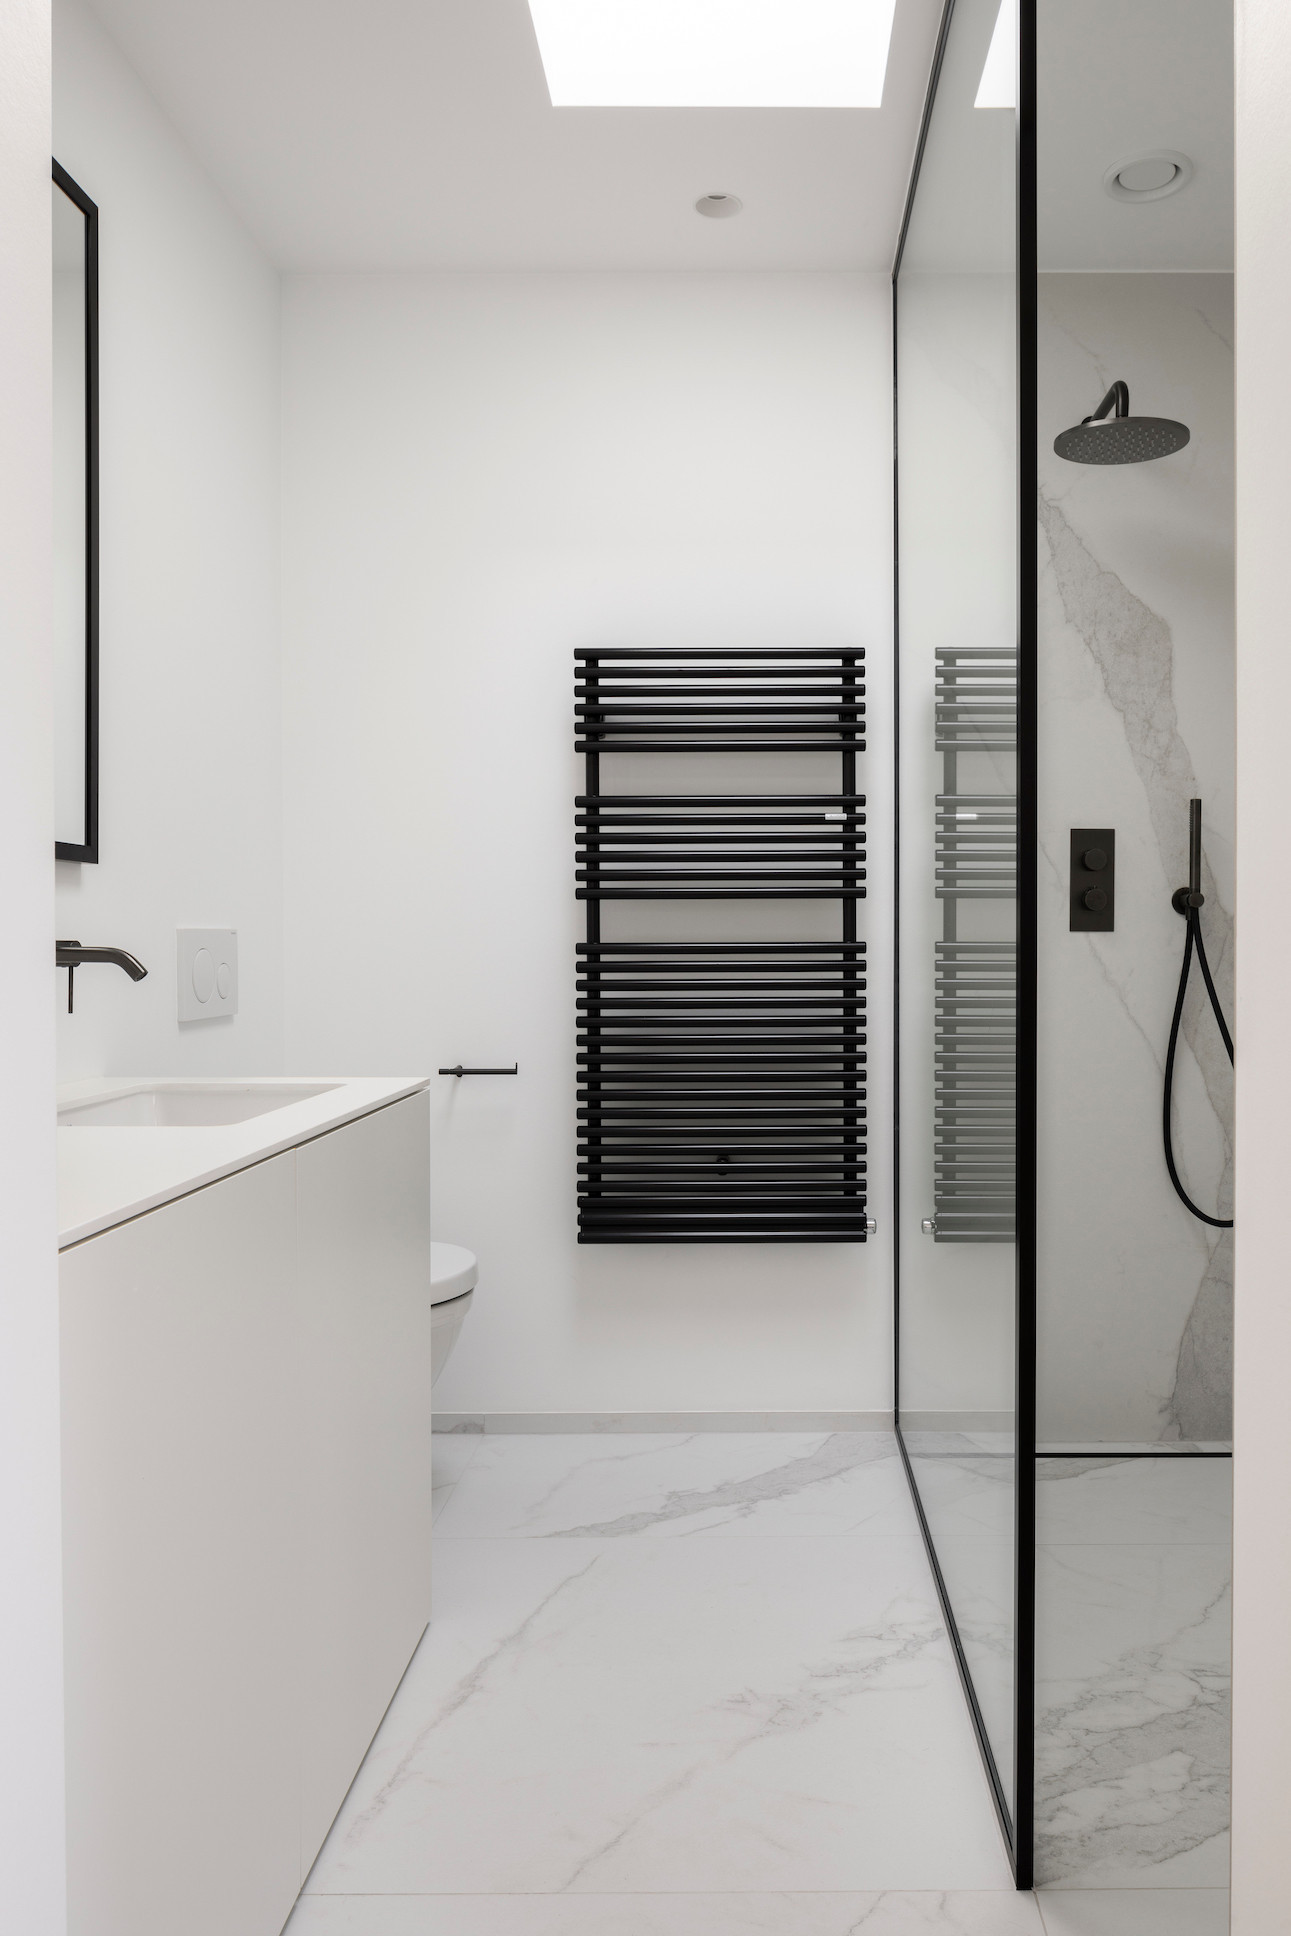 Dans la salle de douche, on retrouve cet esprit graphique et minimaliste. (Photo : Tijs Vervecken)